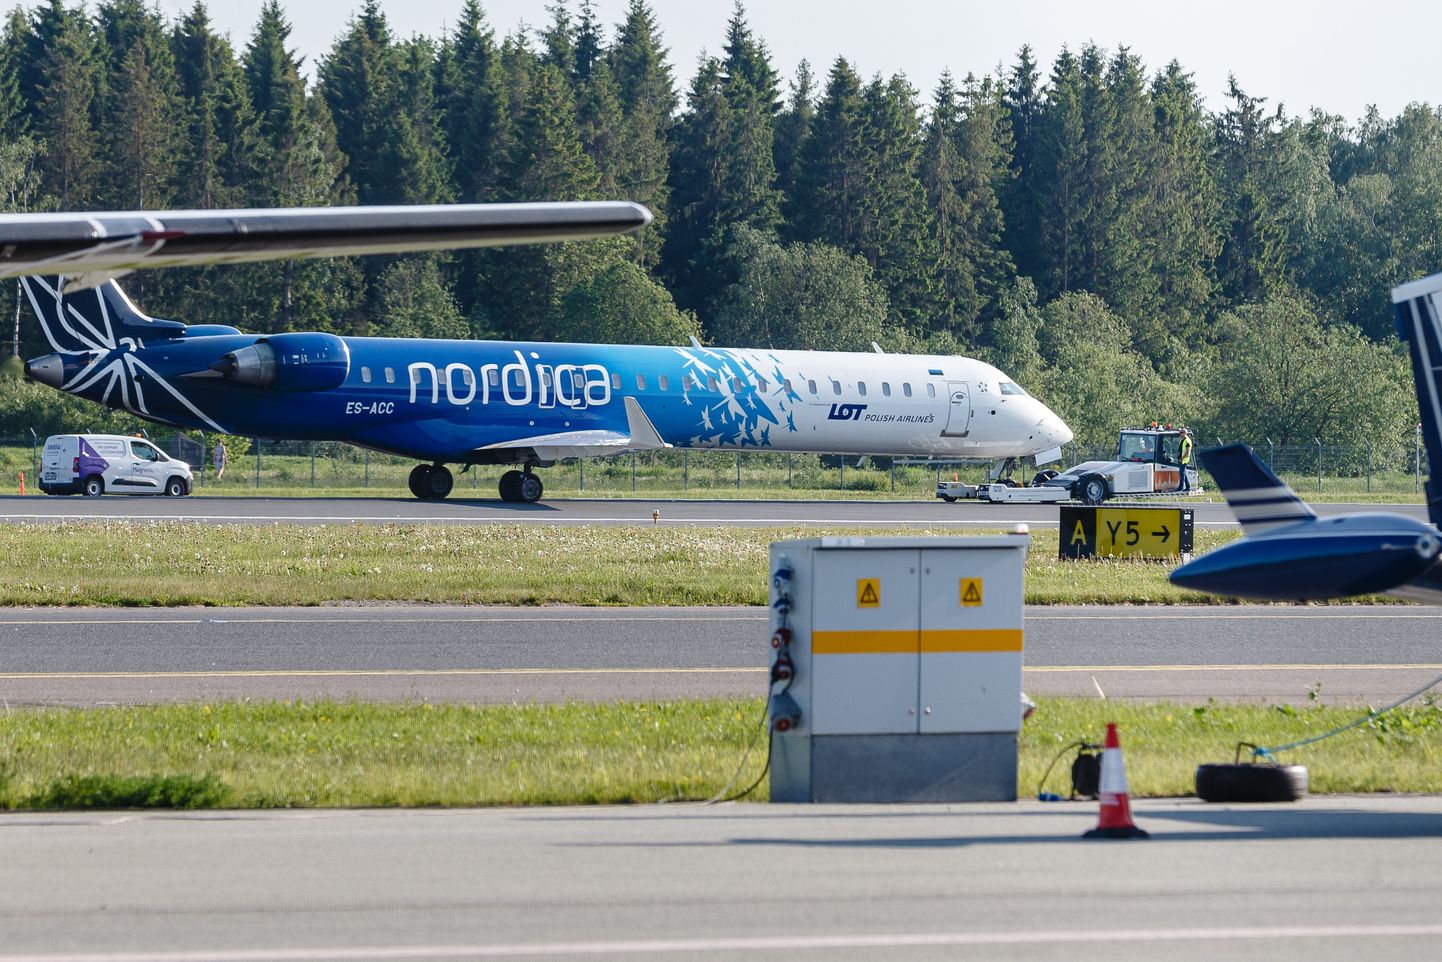 Nordica aircraft